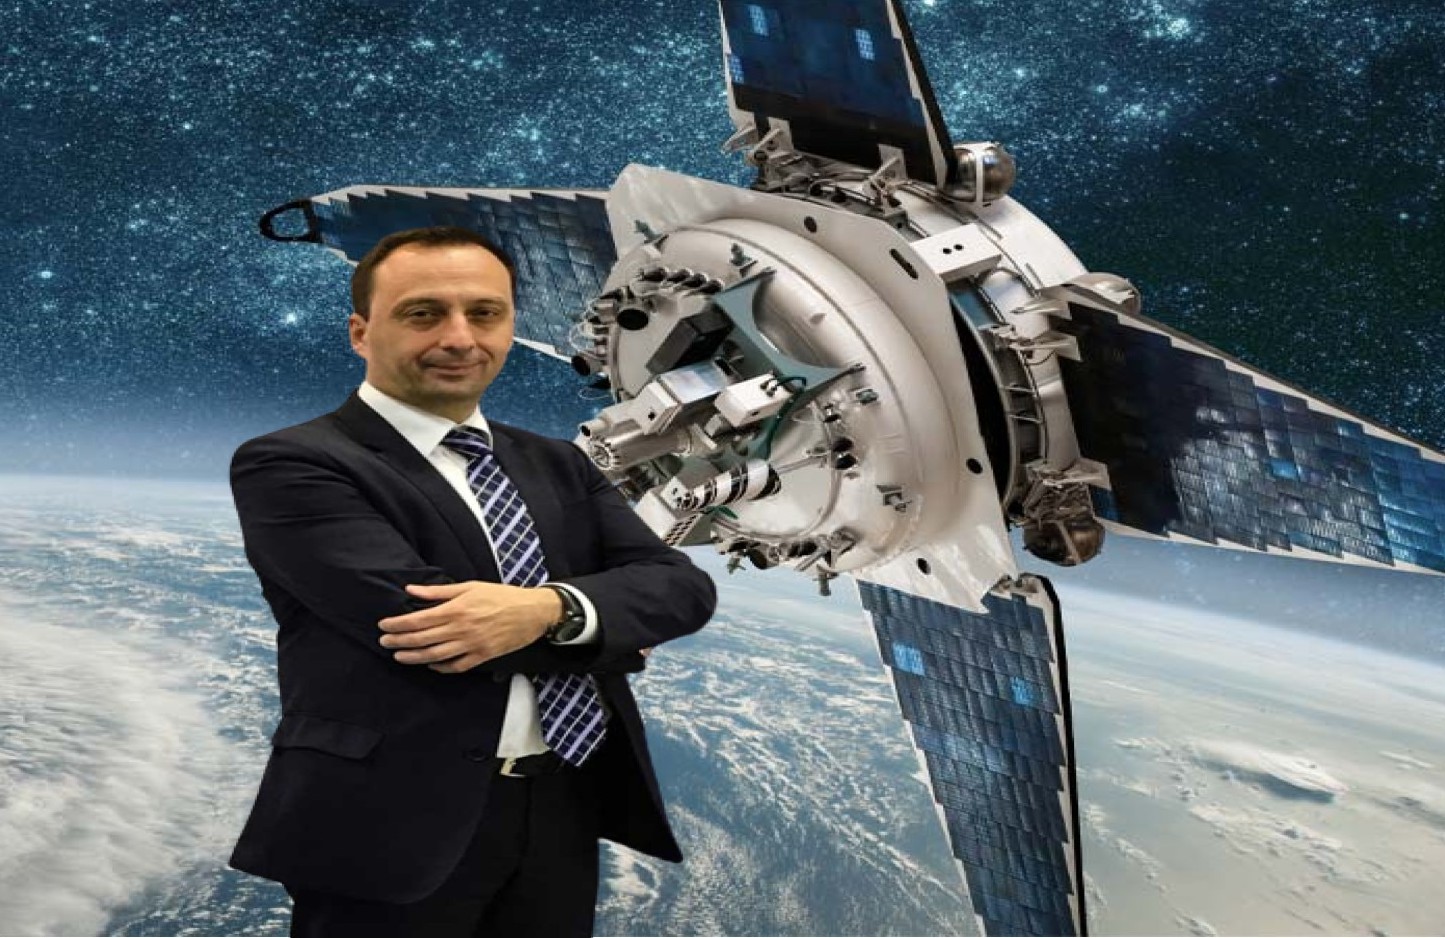 Δρ. Αθανάσιος Πότσης Πρόεδρος της Ένωσης Ελληνικών Βιομηχανιών Διαστημικής Τεχνολογίας και Εφαρμογών © ΕΒΙΔΙΤΕ/powergame.gr